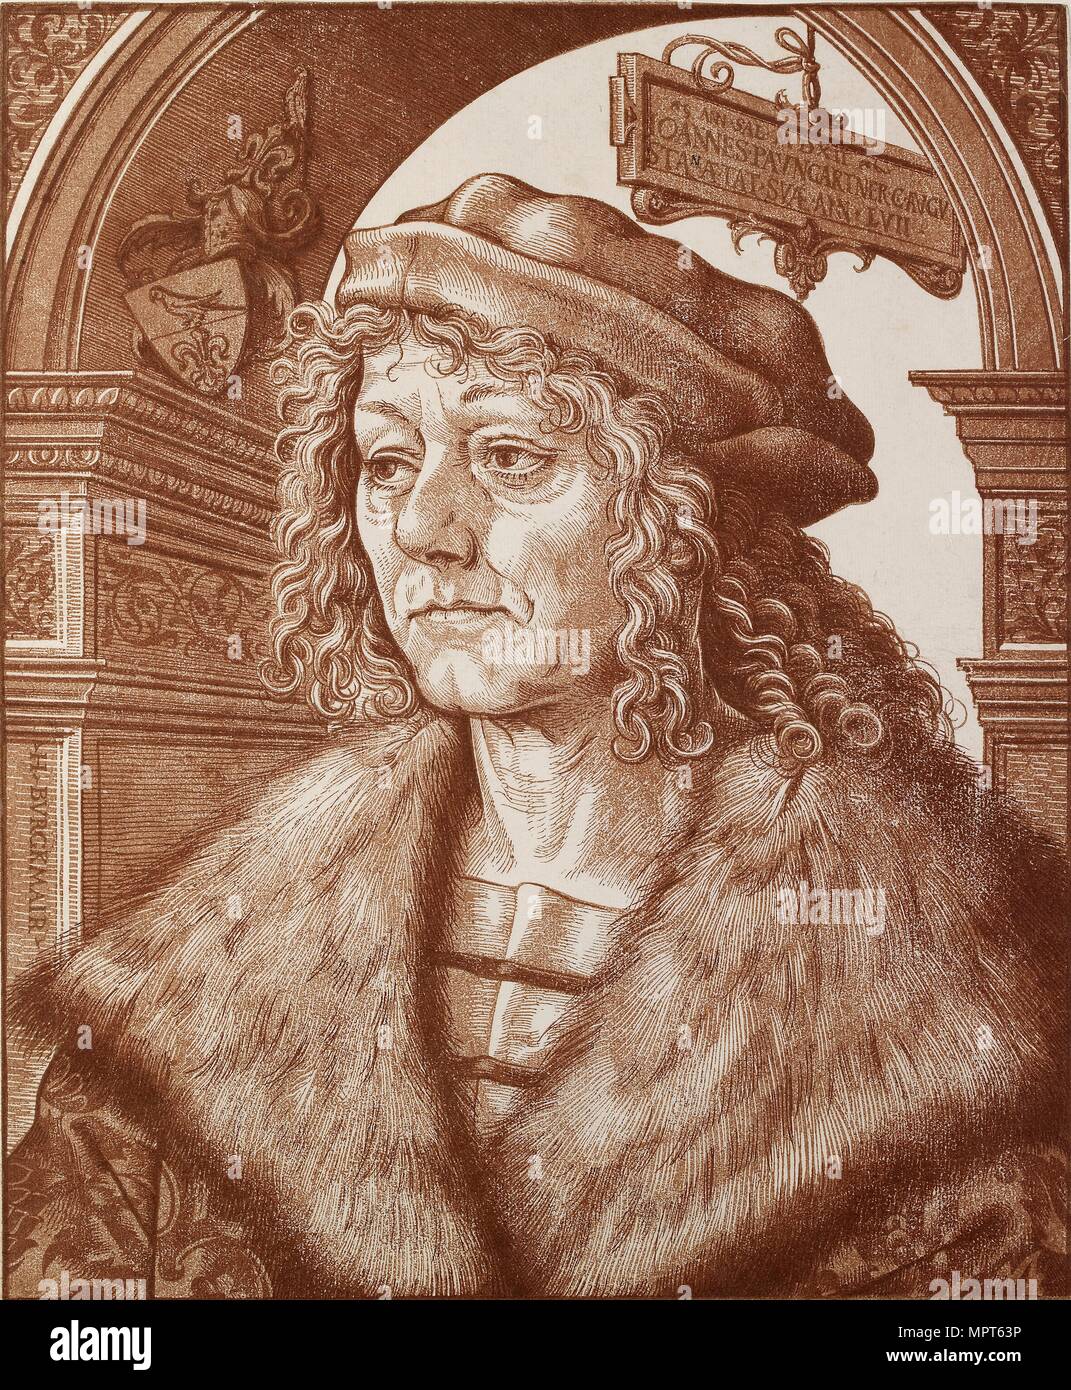 Portrait of Johannes Paumgartner, 1512. Artist: Hans Burgkmair, the Elder. Stock Photo